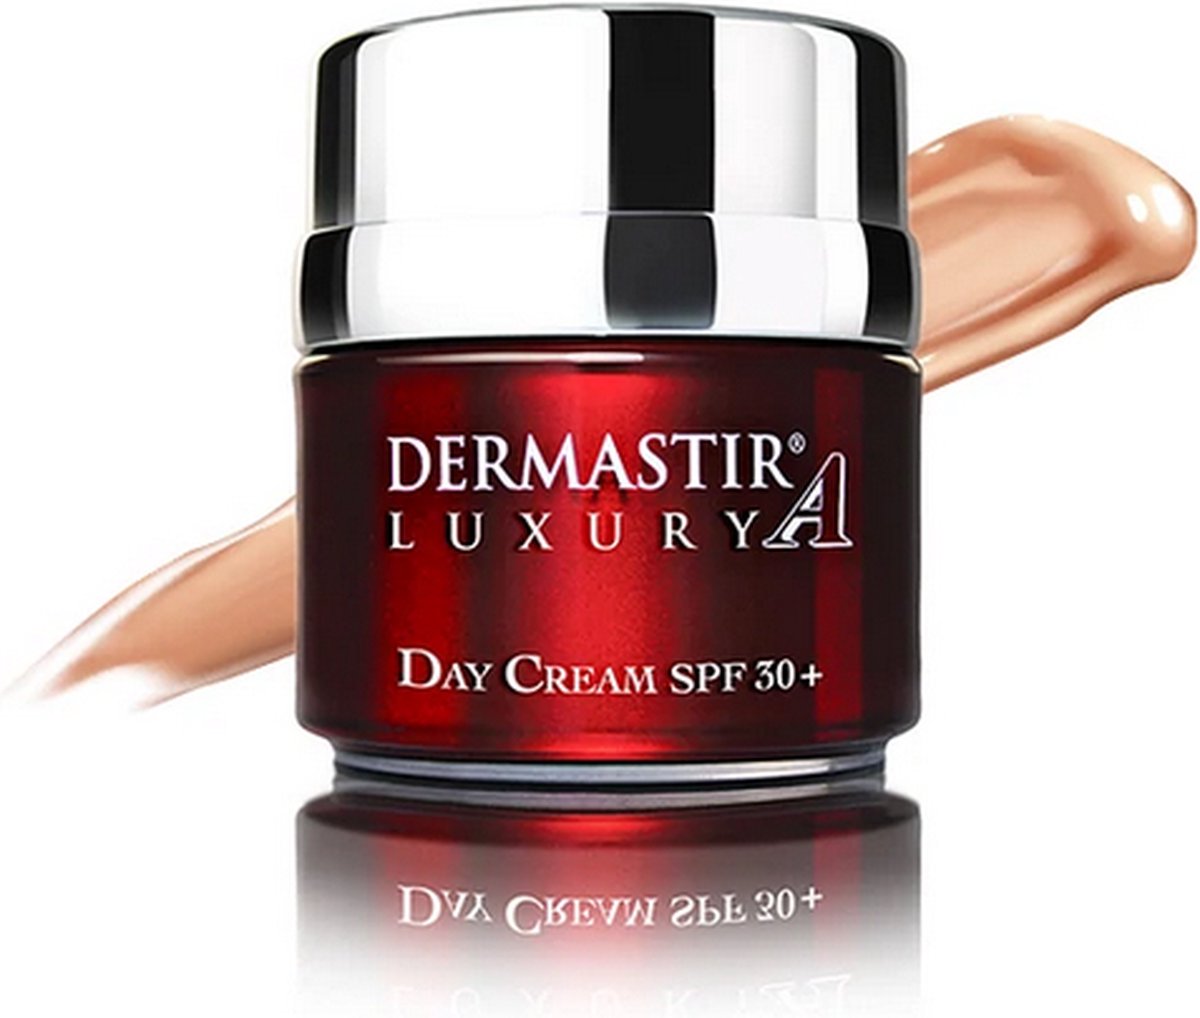 Dermastir Day Cream SPF30+ tinted